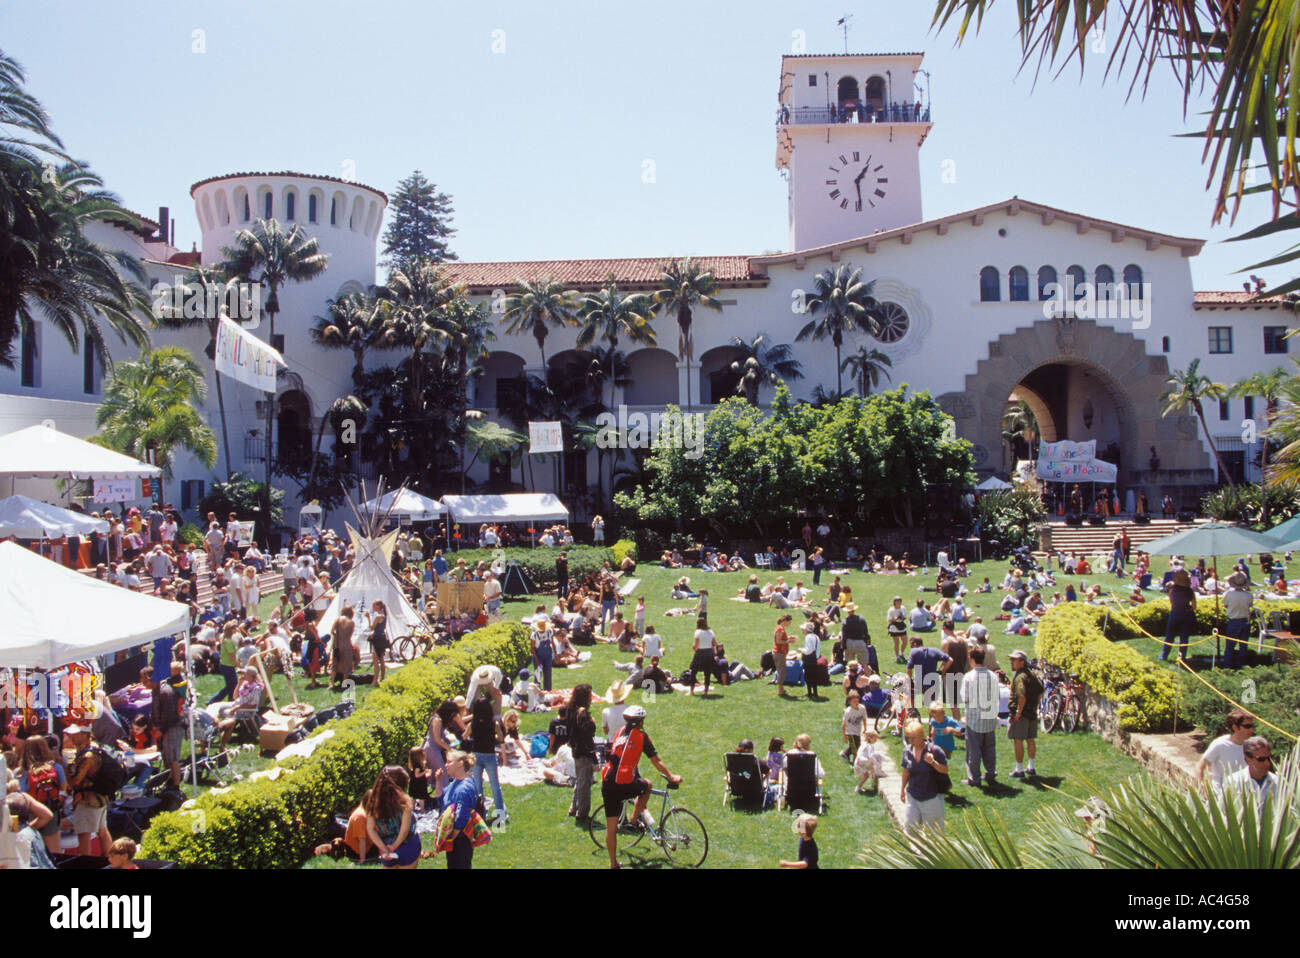 Festival du Jour de la terre au Palais de jardins, palais de Santa Barbara, Santa Barbara, Californie Banque D'Images